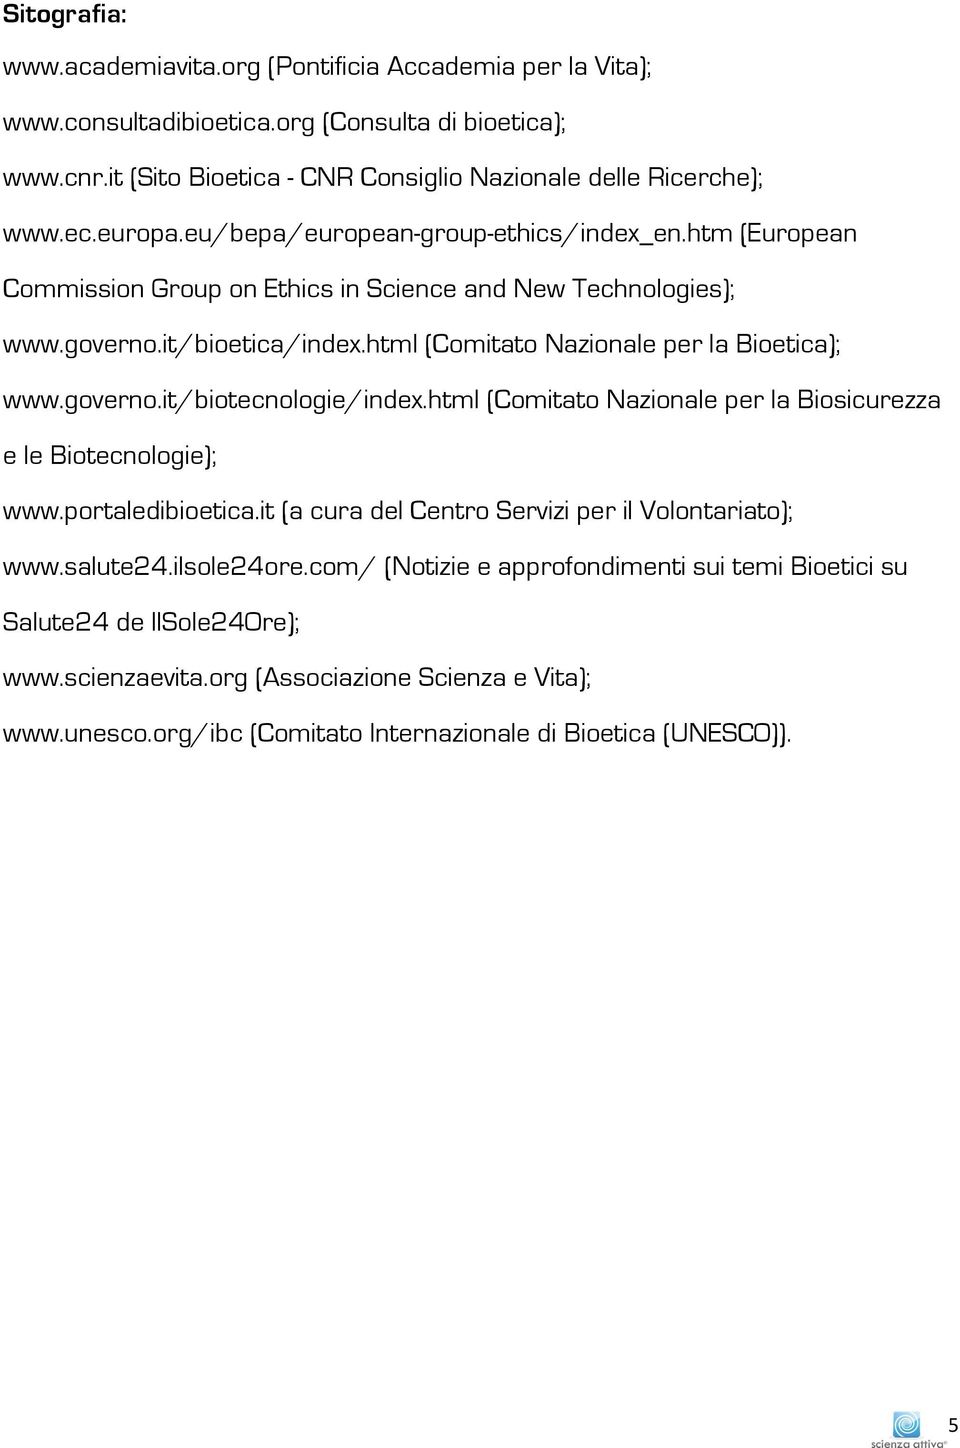 governo.it/biotecnologie/index.html (Comitato Nazionale per la Biosicurezza e le Biotecnologie); www.portaledibioetica.it (a cura del Centro Servizi per il Volontariato); www.salute24.ilsole24ore.